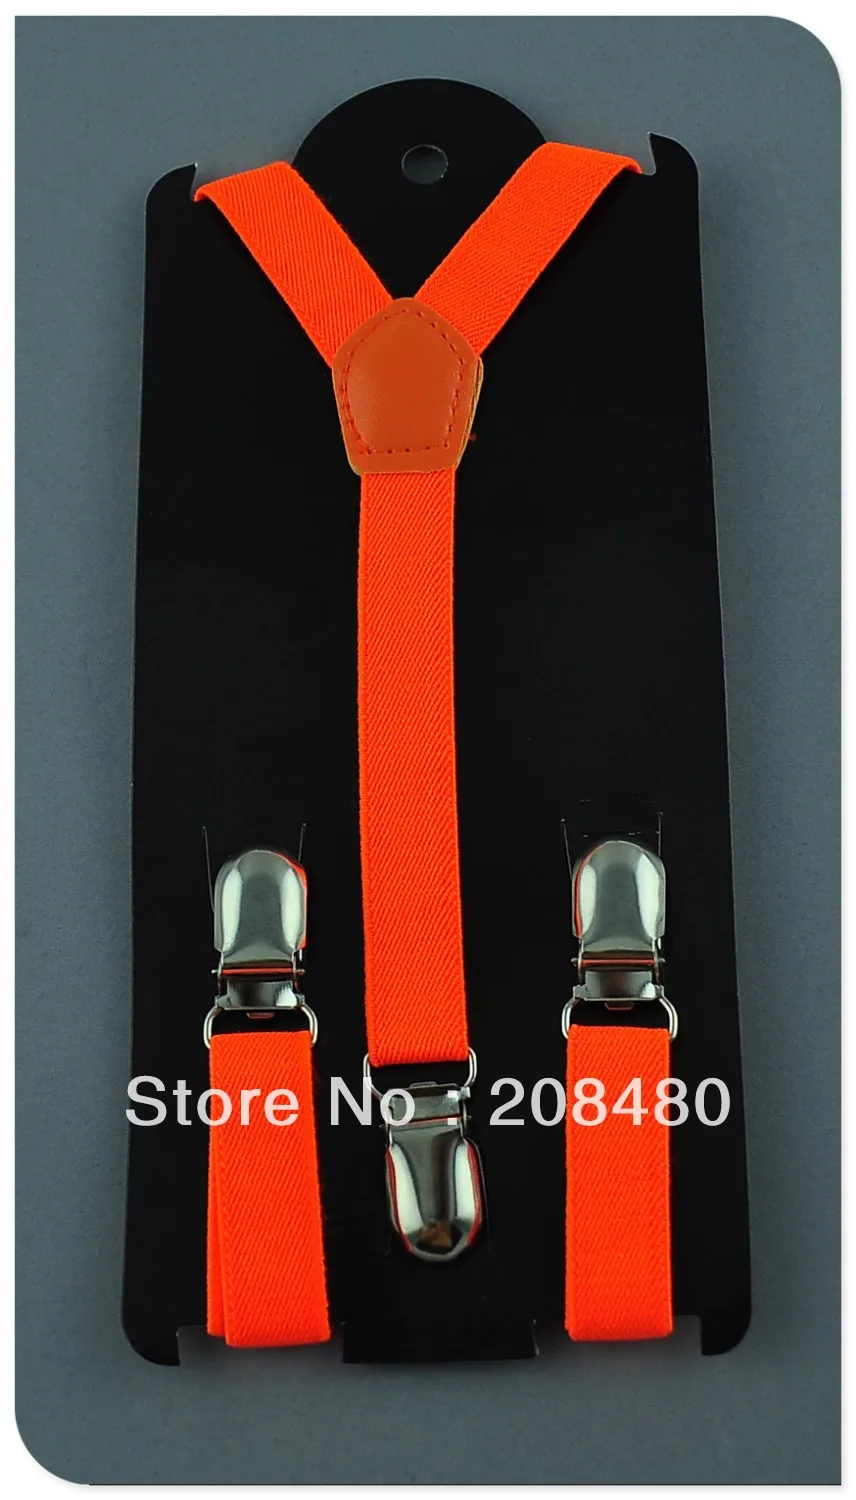 Бесплатная shipping-1.5x65cm "конфеты Orange" цвет дети Подтяжки для женщин детей/Обувь для мальчиков/Обувь для девочек чулок Эластичные подтяжки